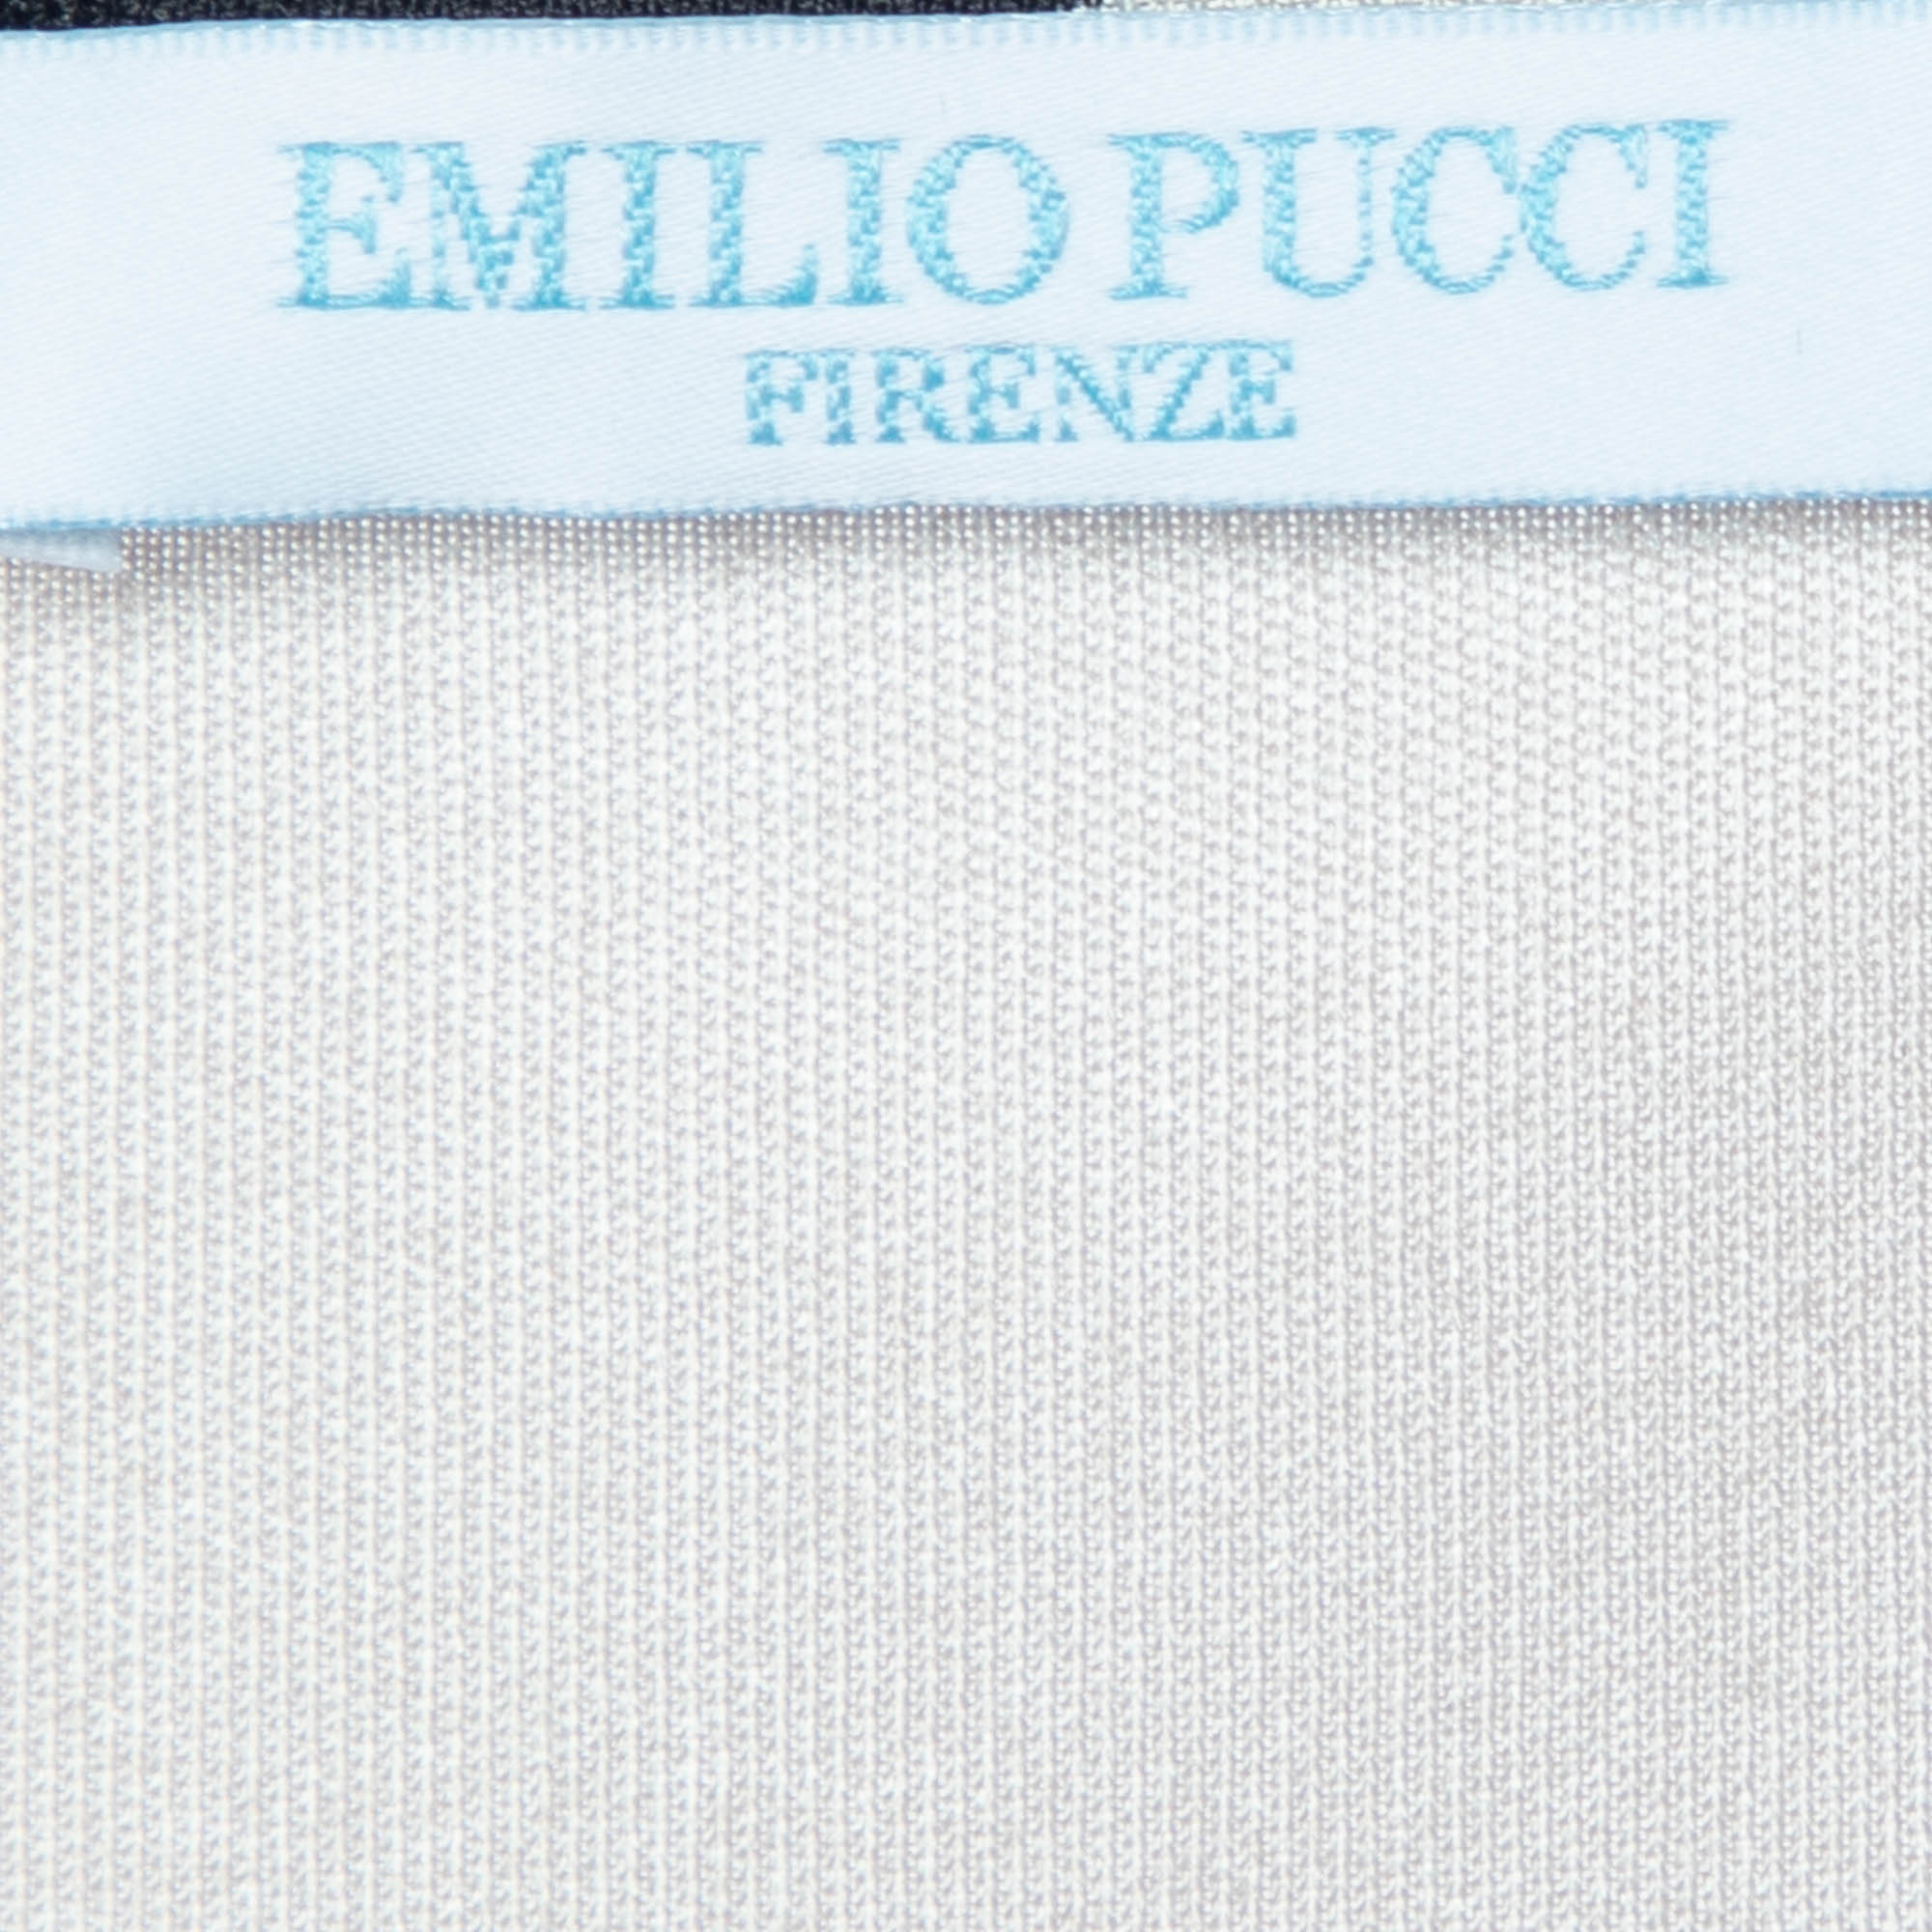 Emilio Pucci Multicolor Printed Jersey Top L